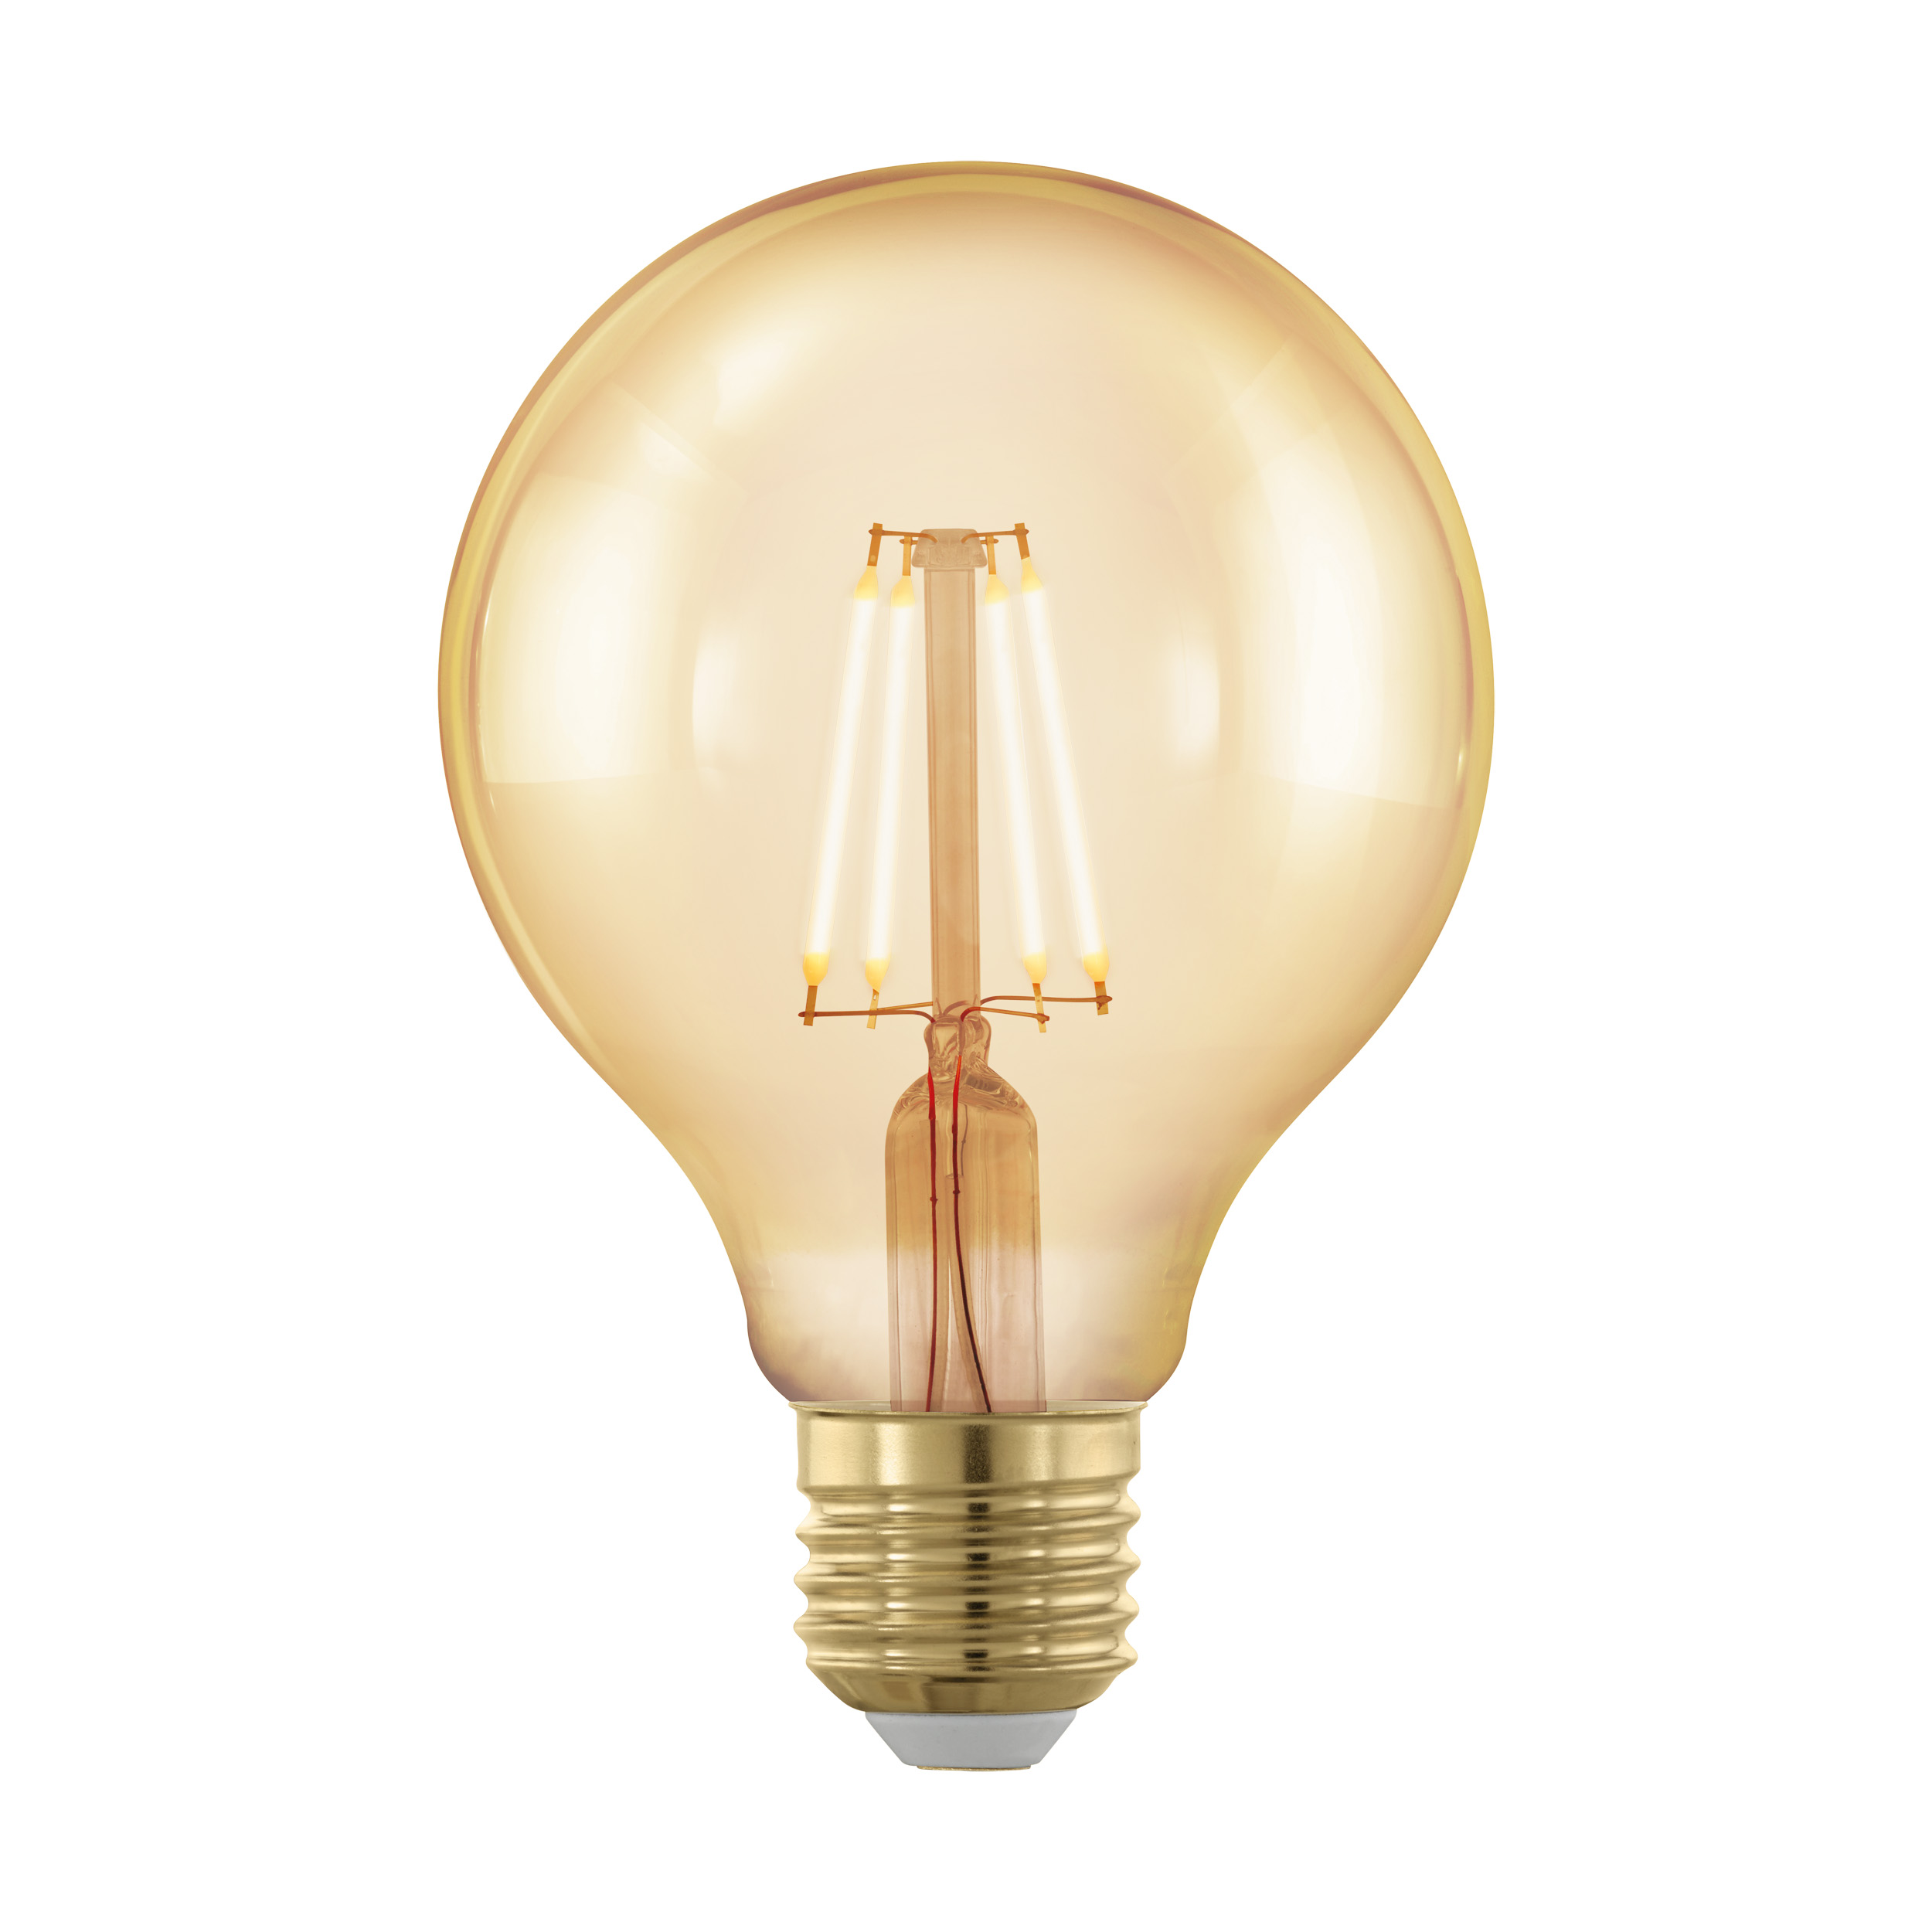 LED Lamp golden age E27 globe 80 320Lm 1700K dimb